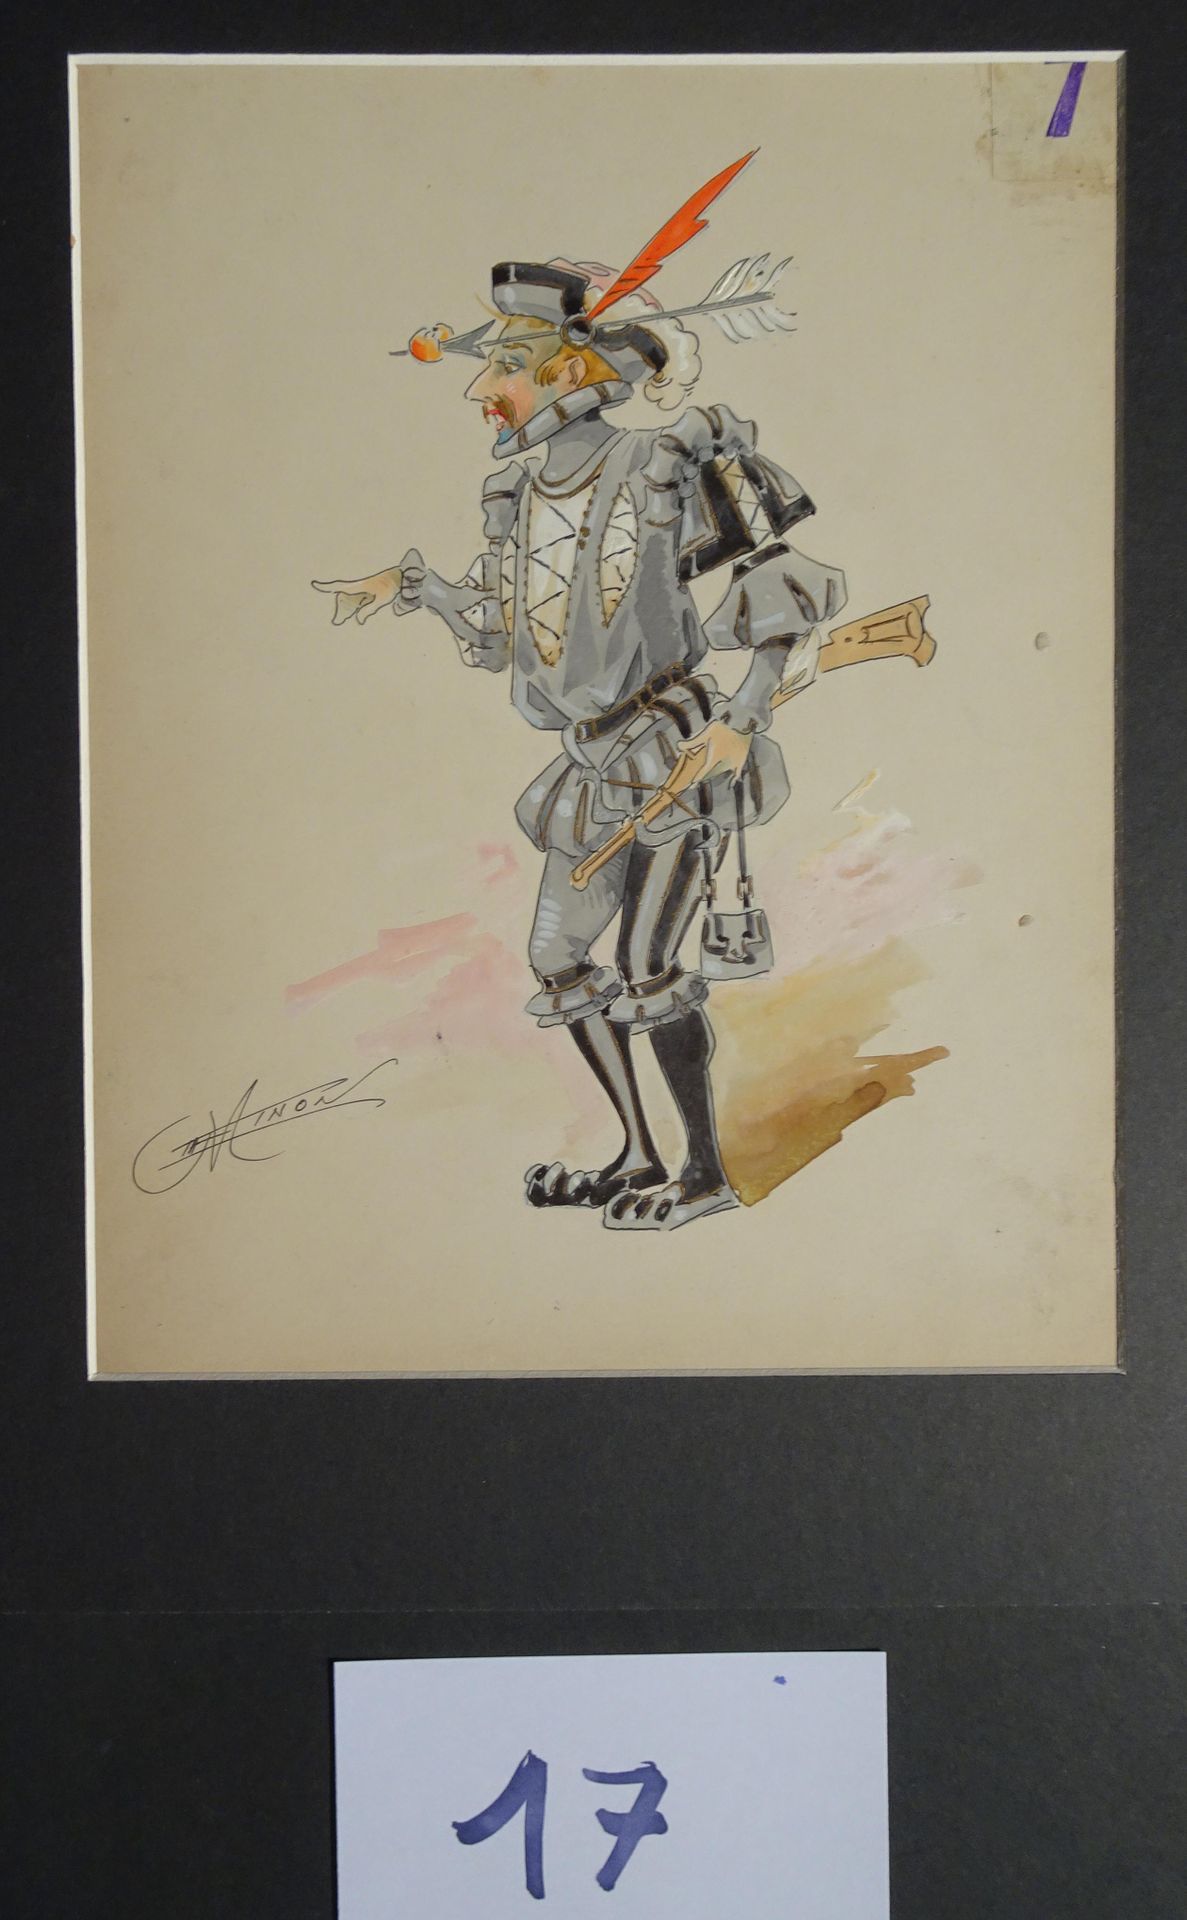 MINON MINON

"El cazador y el cerrajero" c.1880 para una revista. 2 modelos de t&hellip;